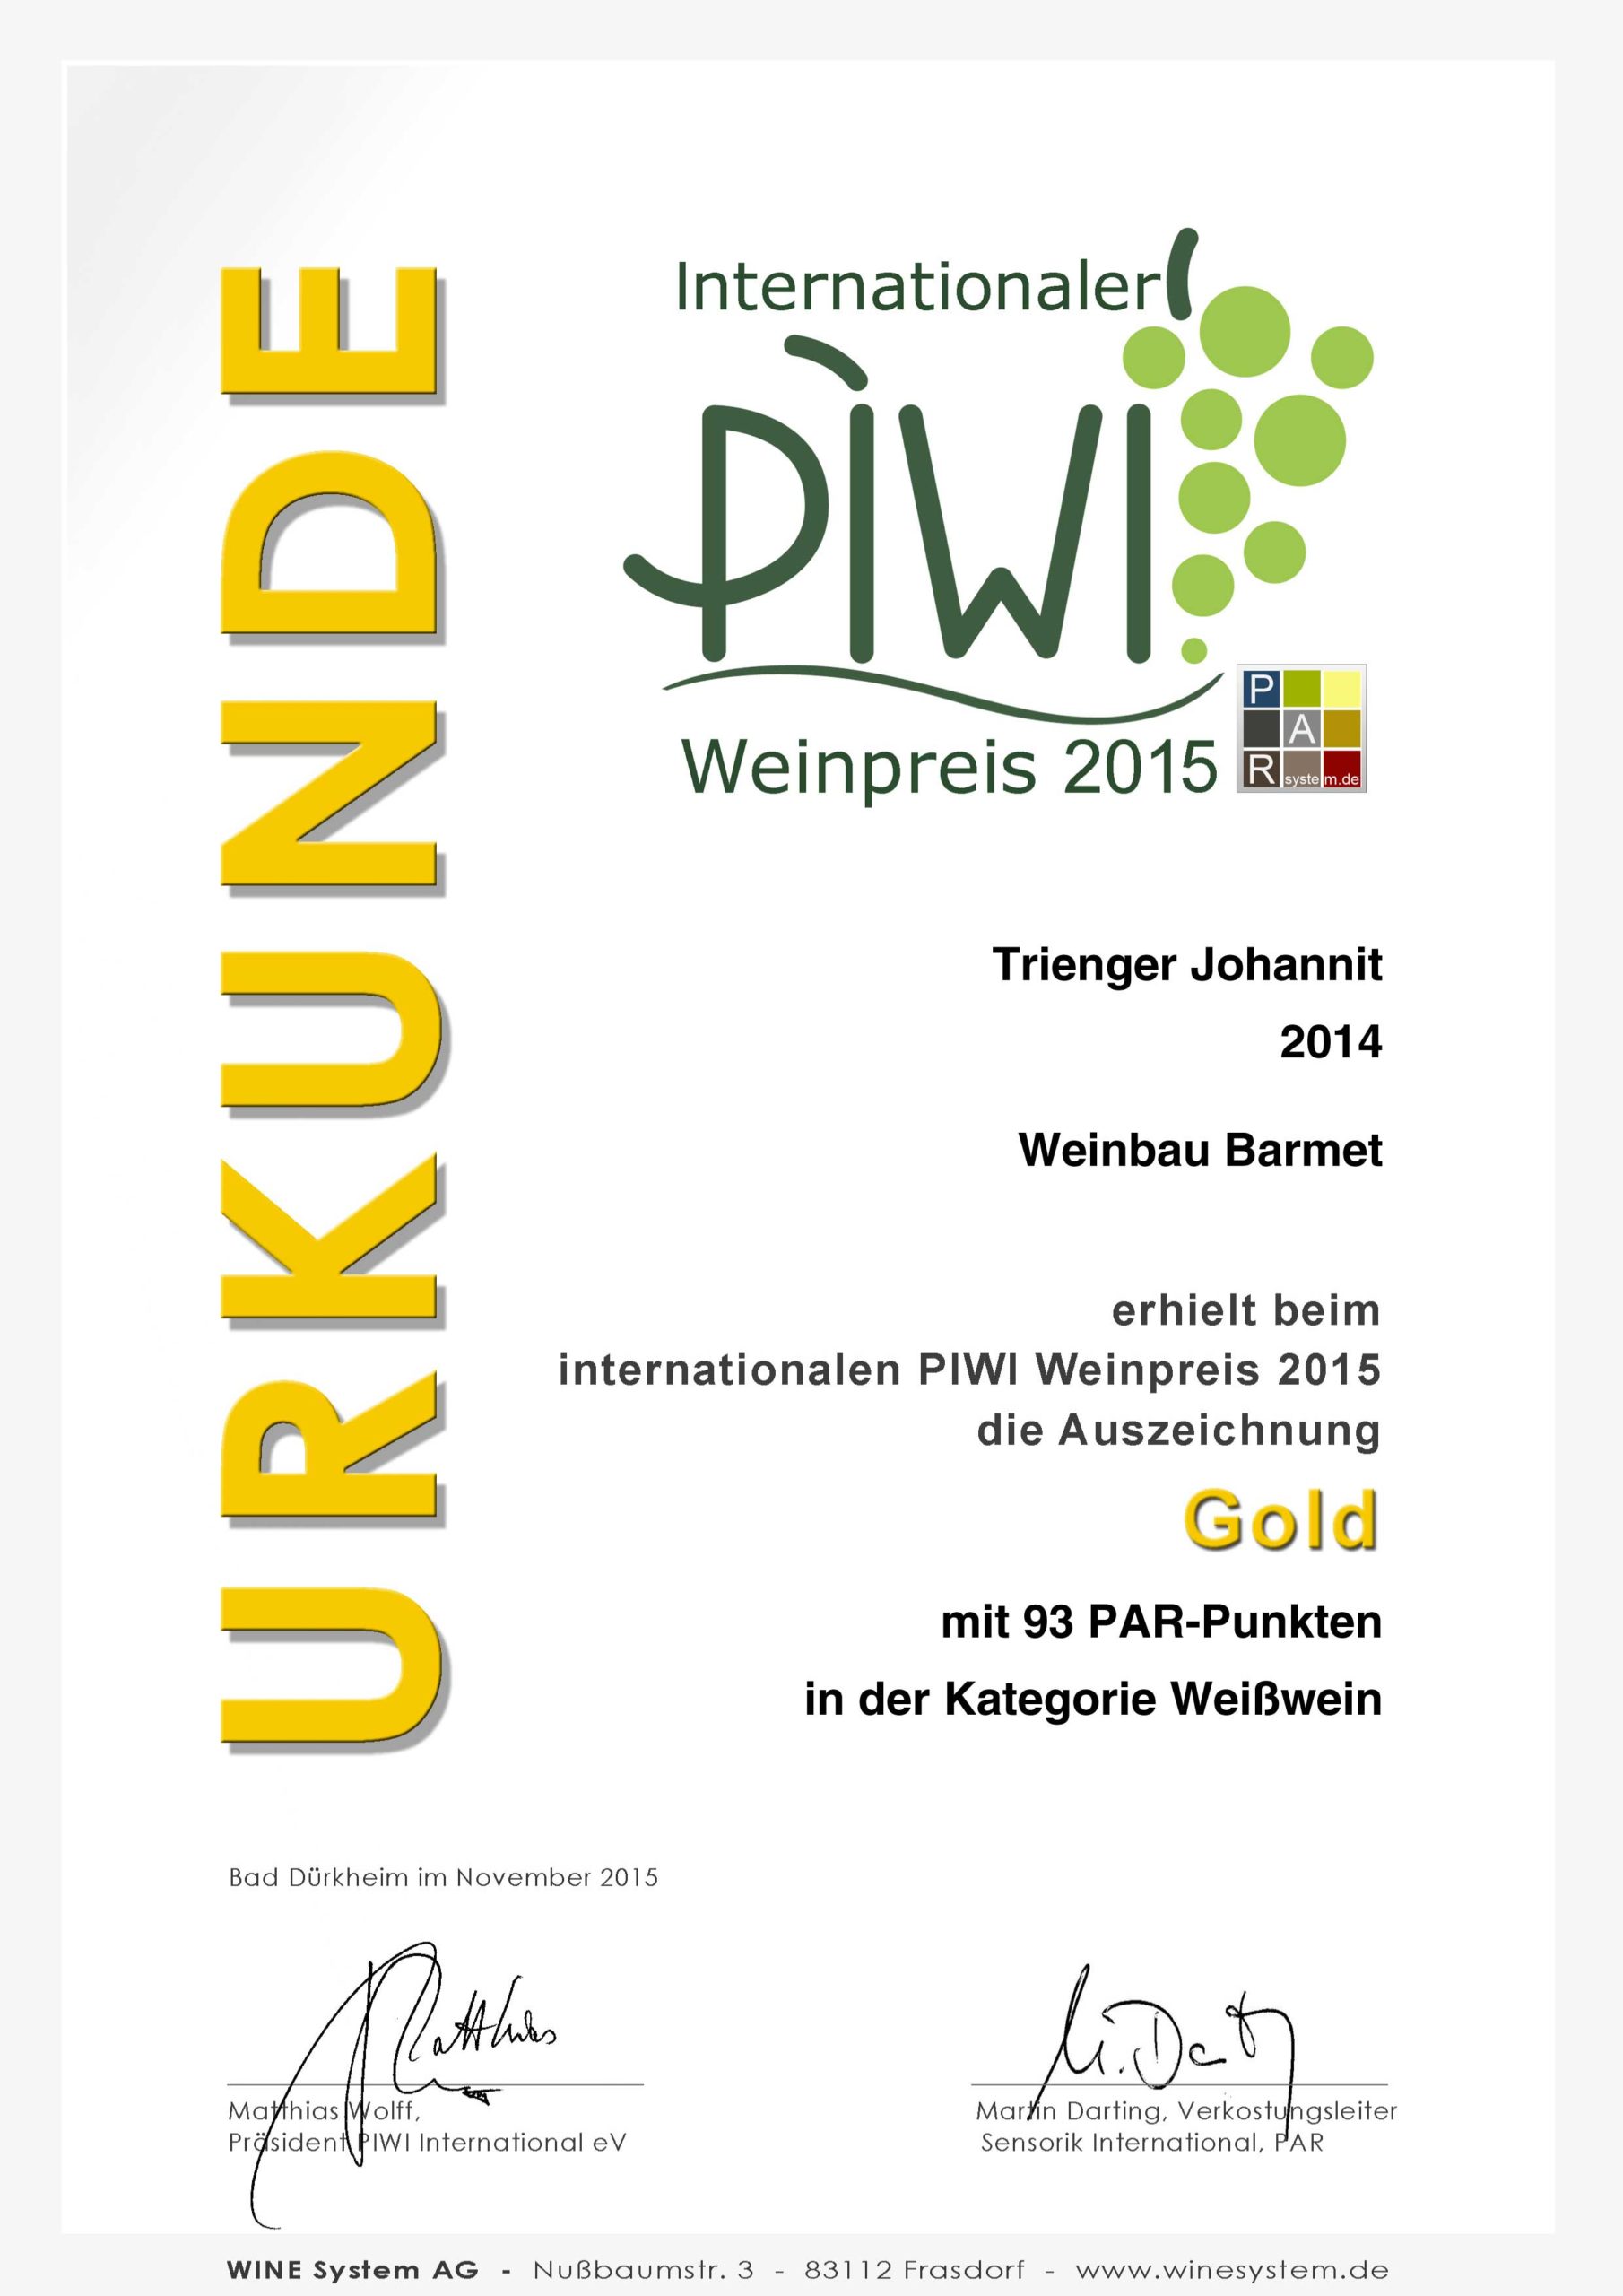 PIWI Weinpreis 2015 GOLD - Trienger Johanniter 2014